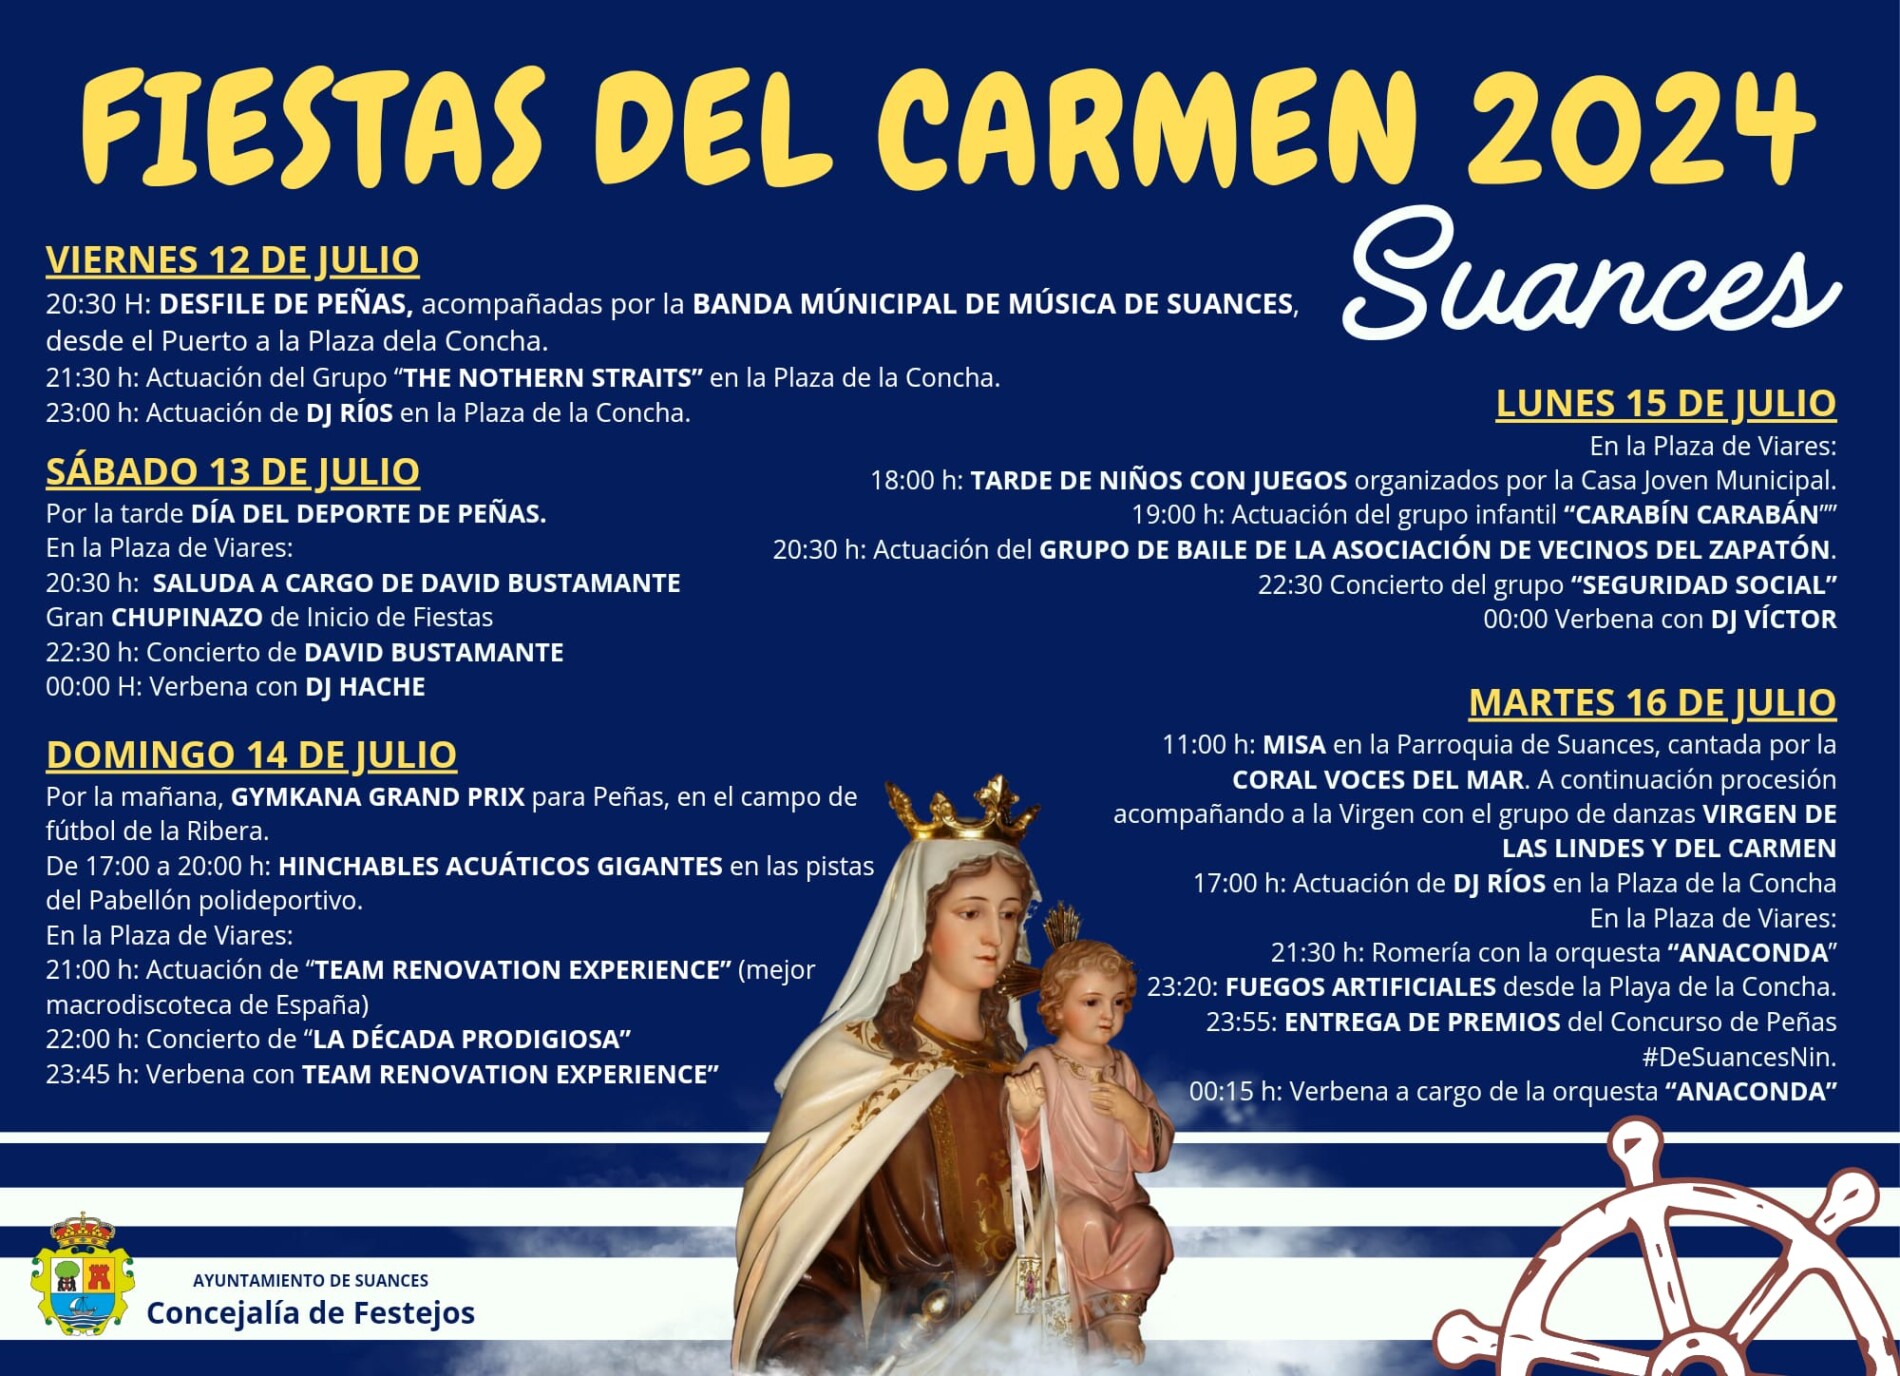 El Carmen en Suances. Julio 2024. Fiesta de Interés Turistico Regional